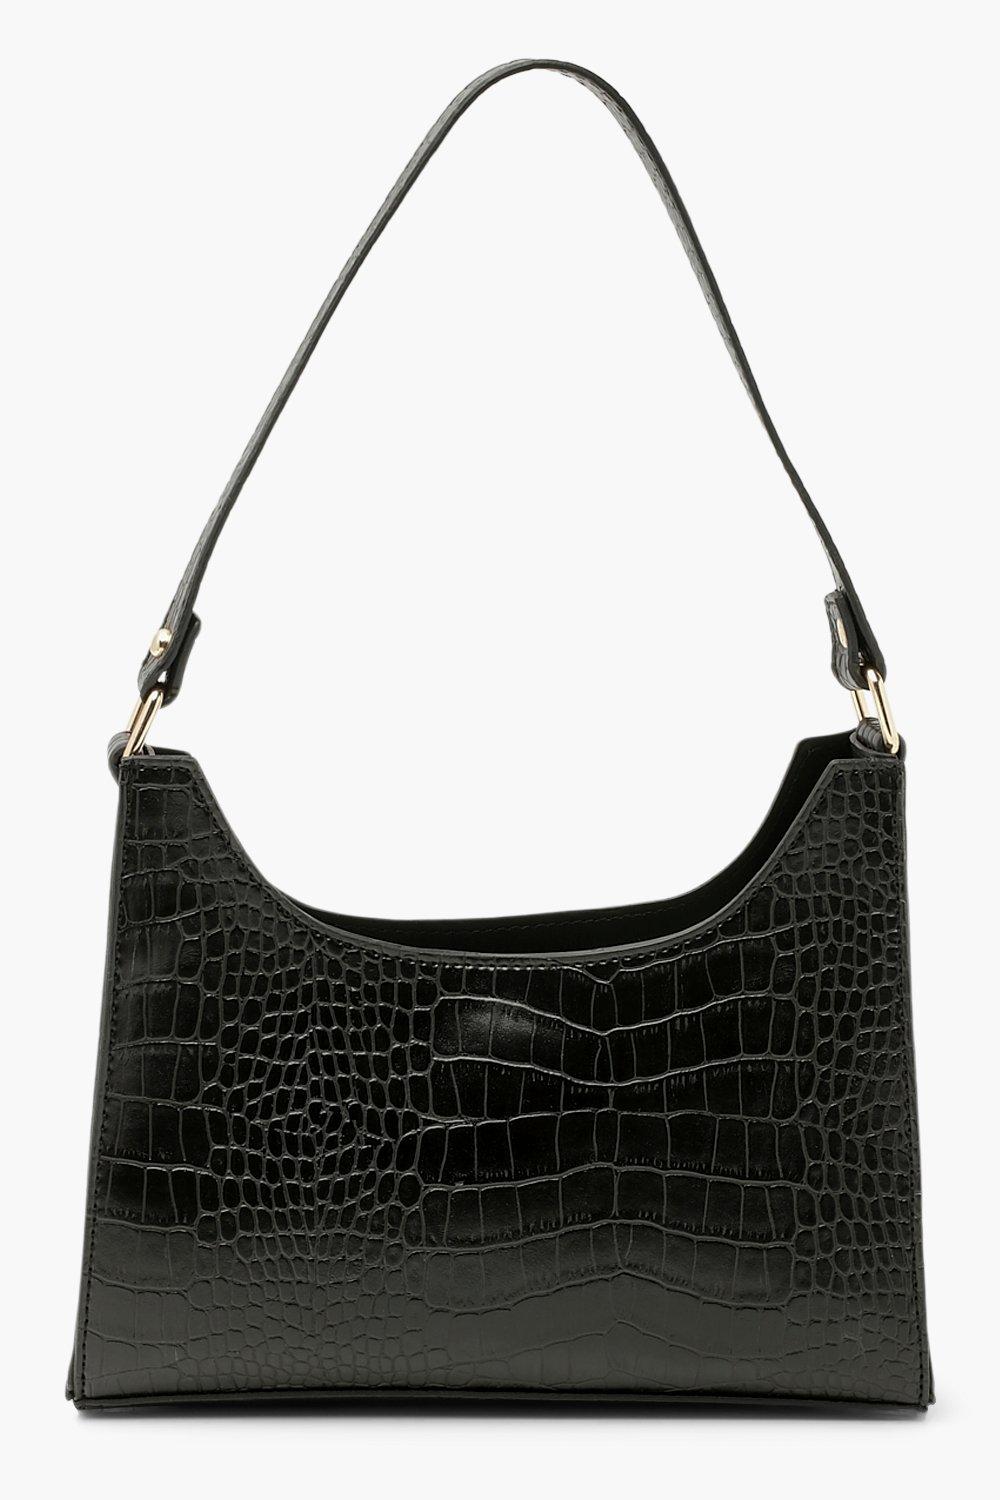 womens croc structured shoulder bag - black - one size, black